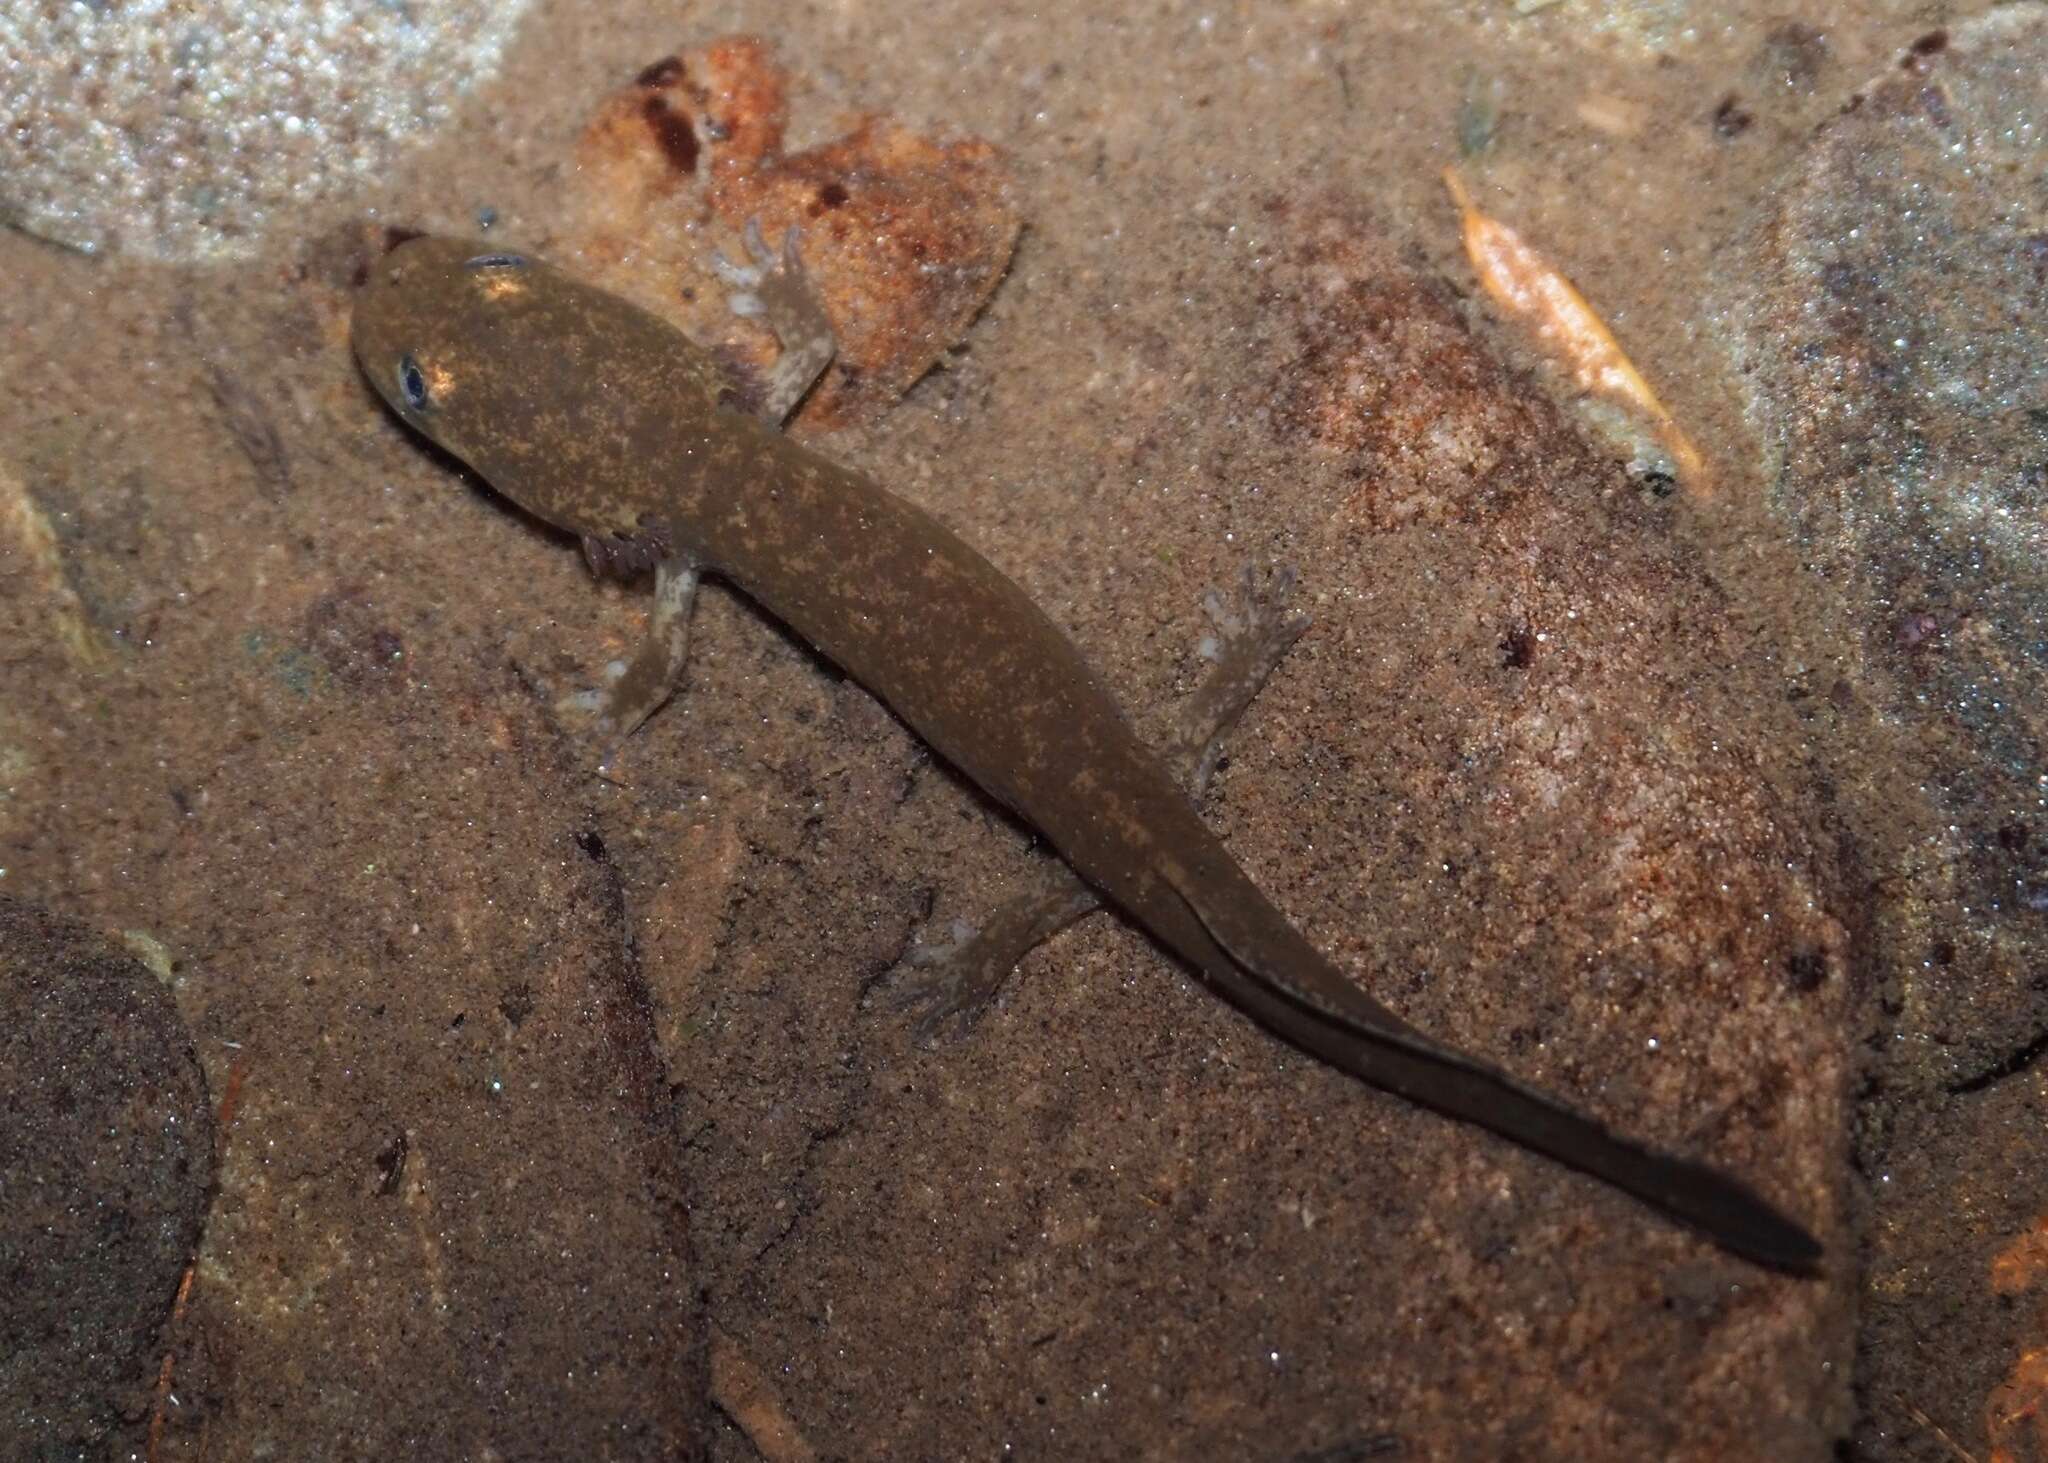 Image of Idaho Giant Salamander